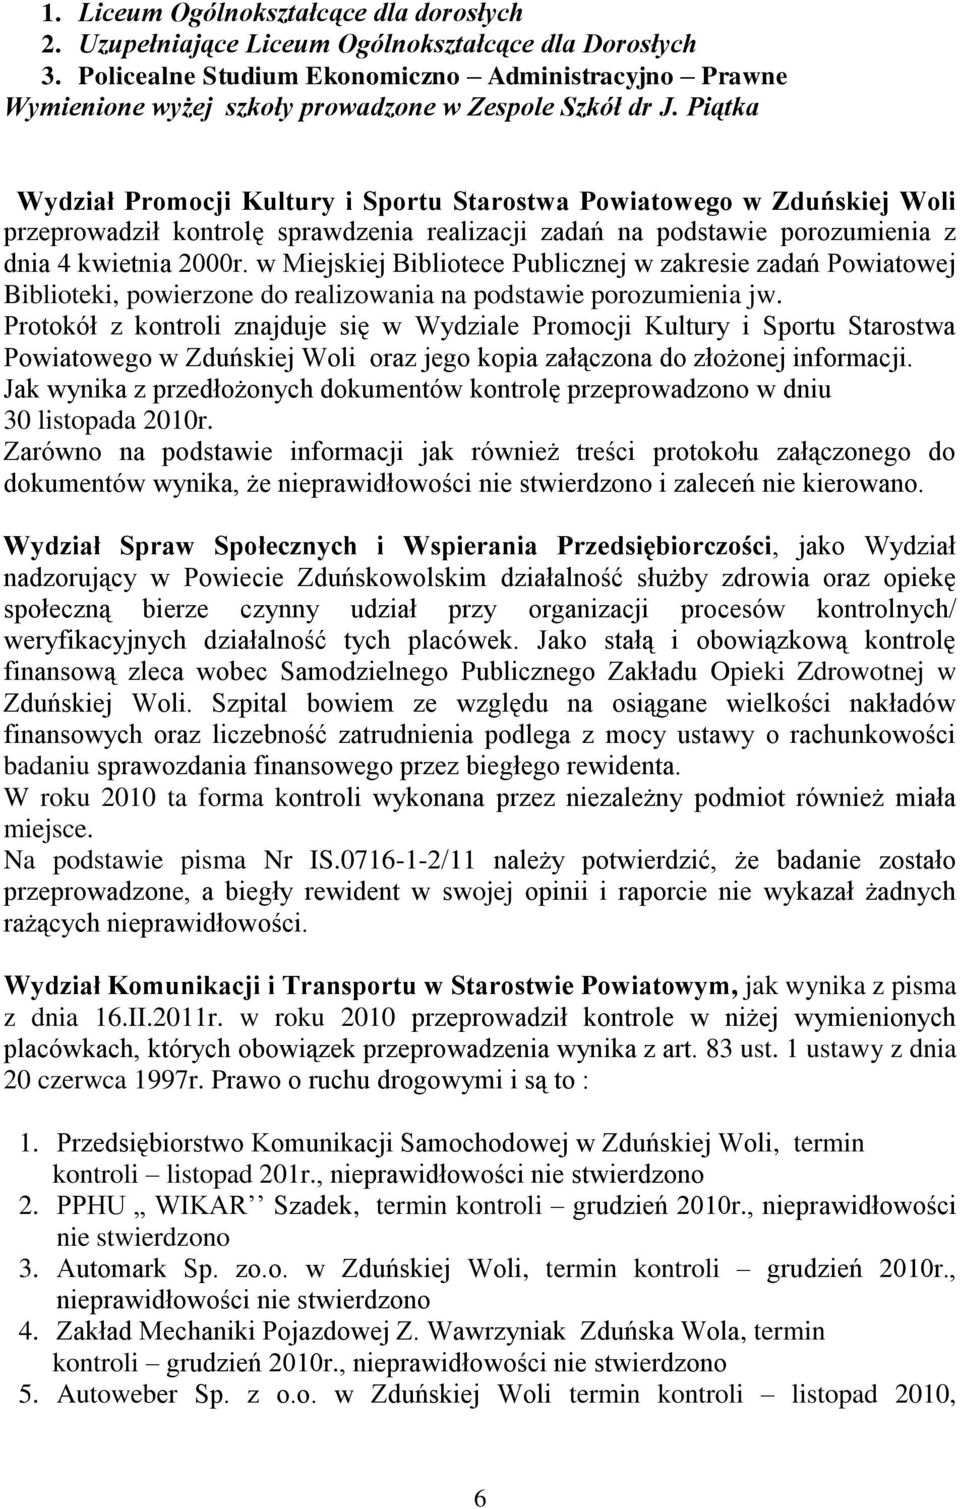 Piątka Wydział Promocji Kultury i Sportu Starostwa Powiatowego w Zduńskiej Woli przeprowadził kontrolę sprawdzenia realizacji zadań na podstawie porozumienia z dnia 4 kwietnia 2000r.